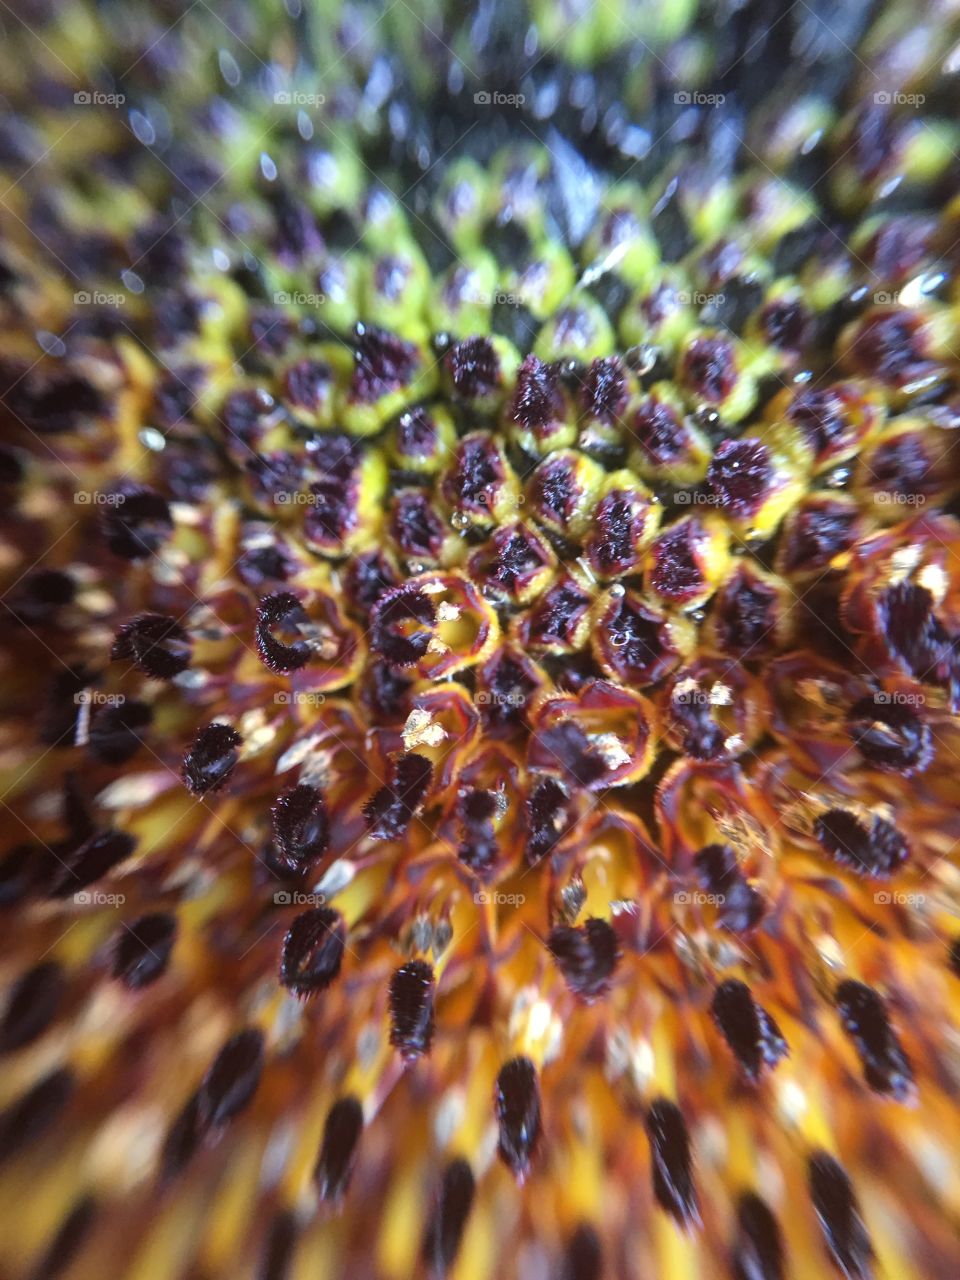 Sunflower blossom seeds